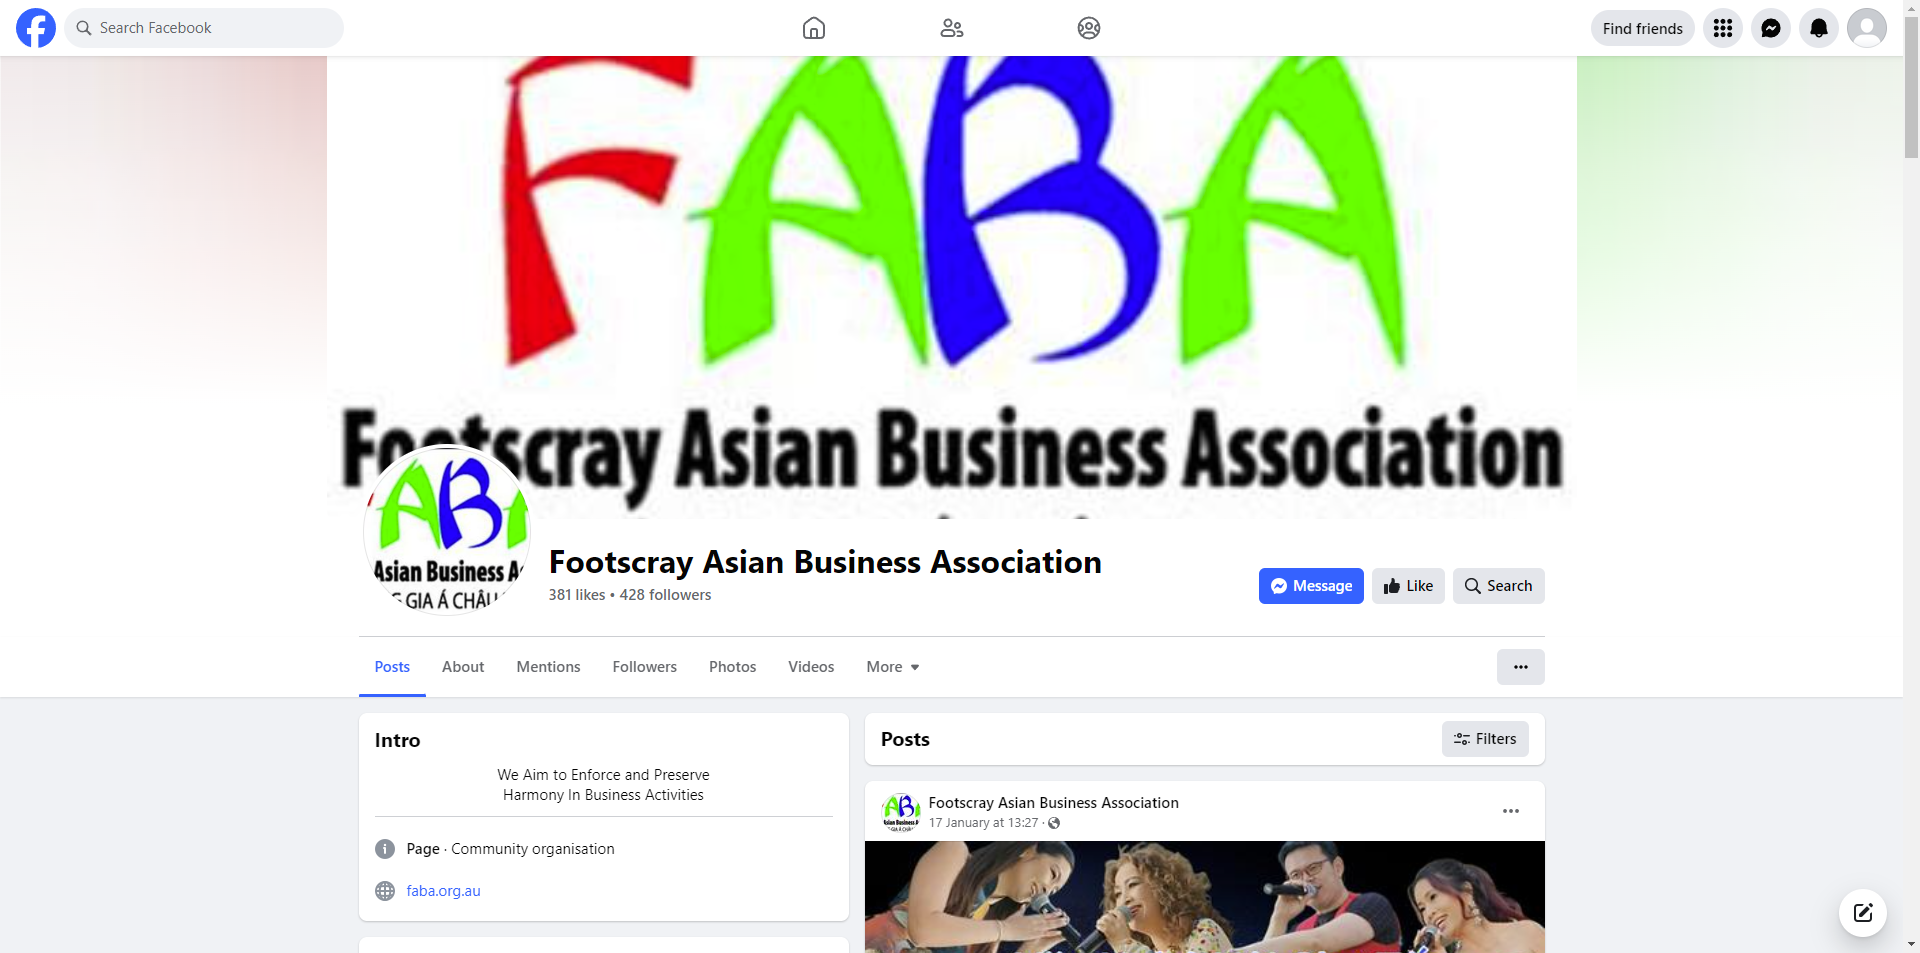 Footscray Asian Business Association